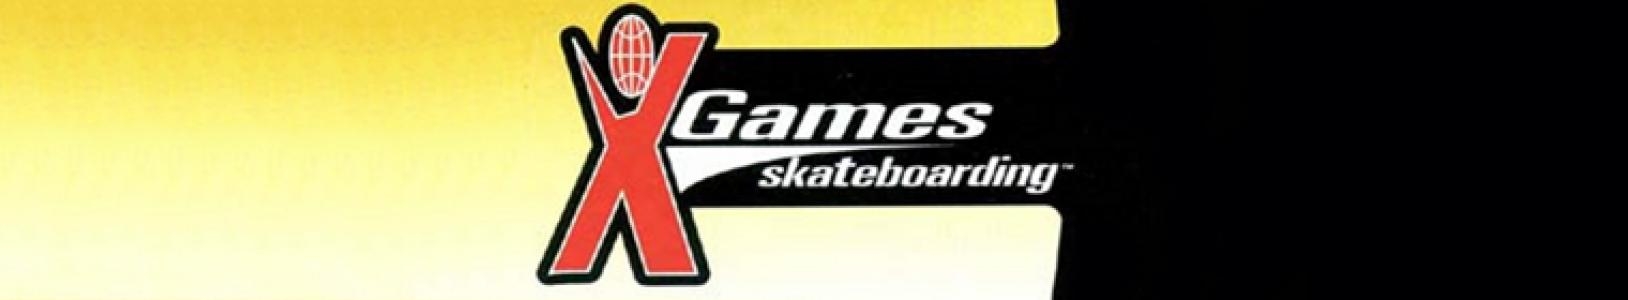 ESPN X Games Skateboarding banner